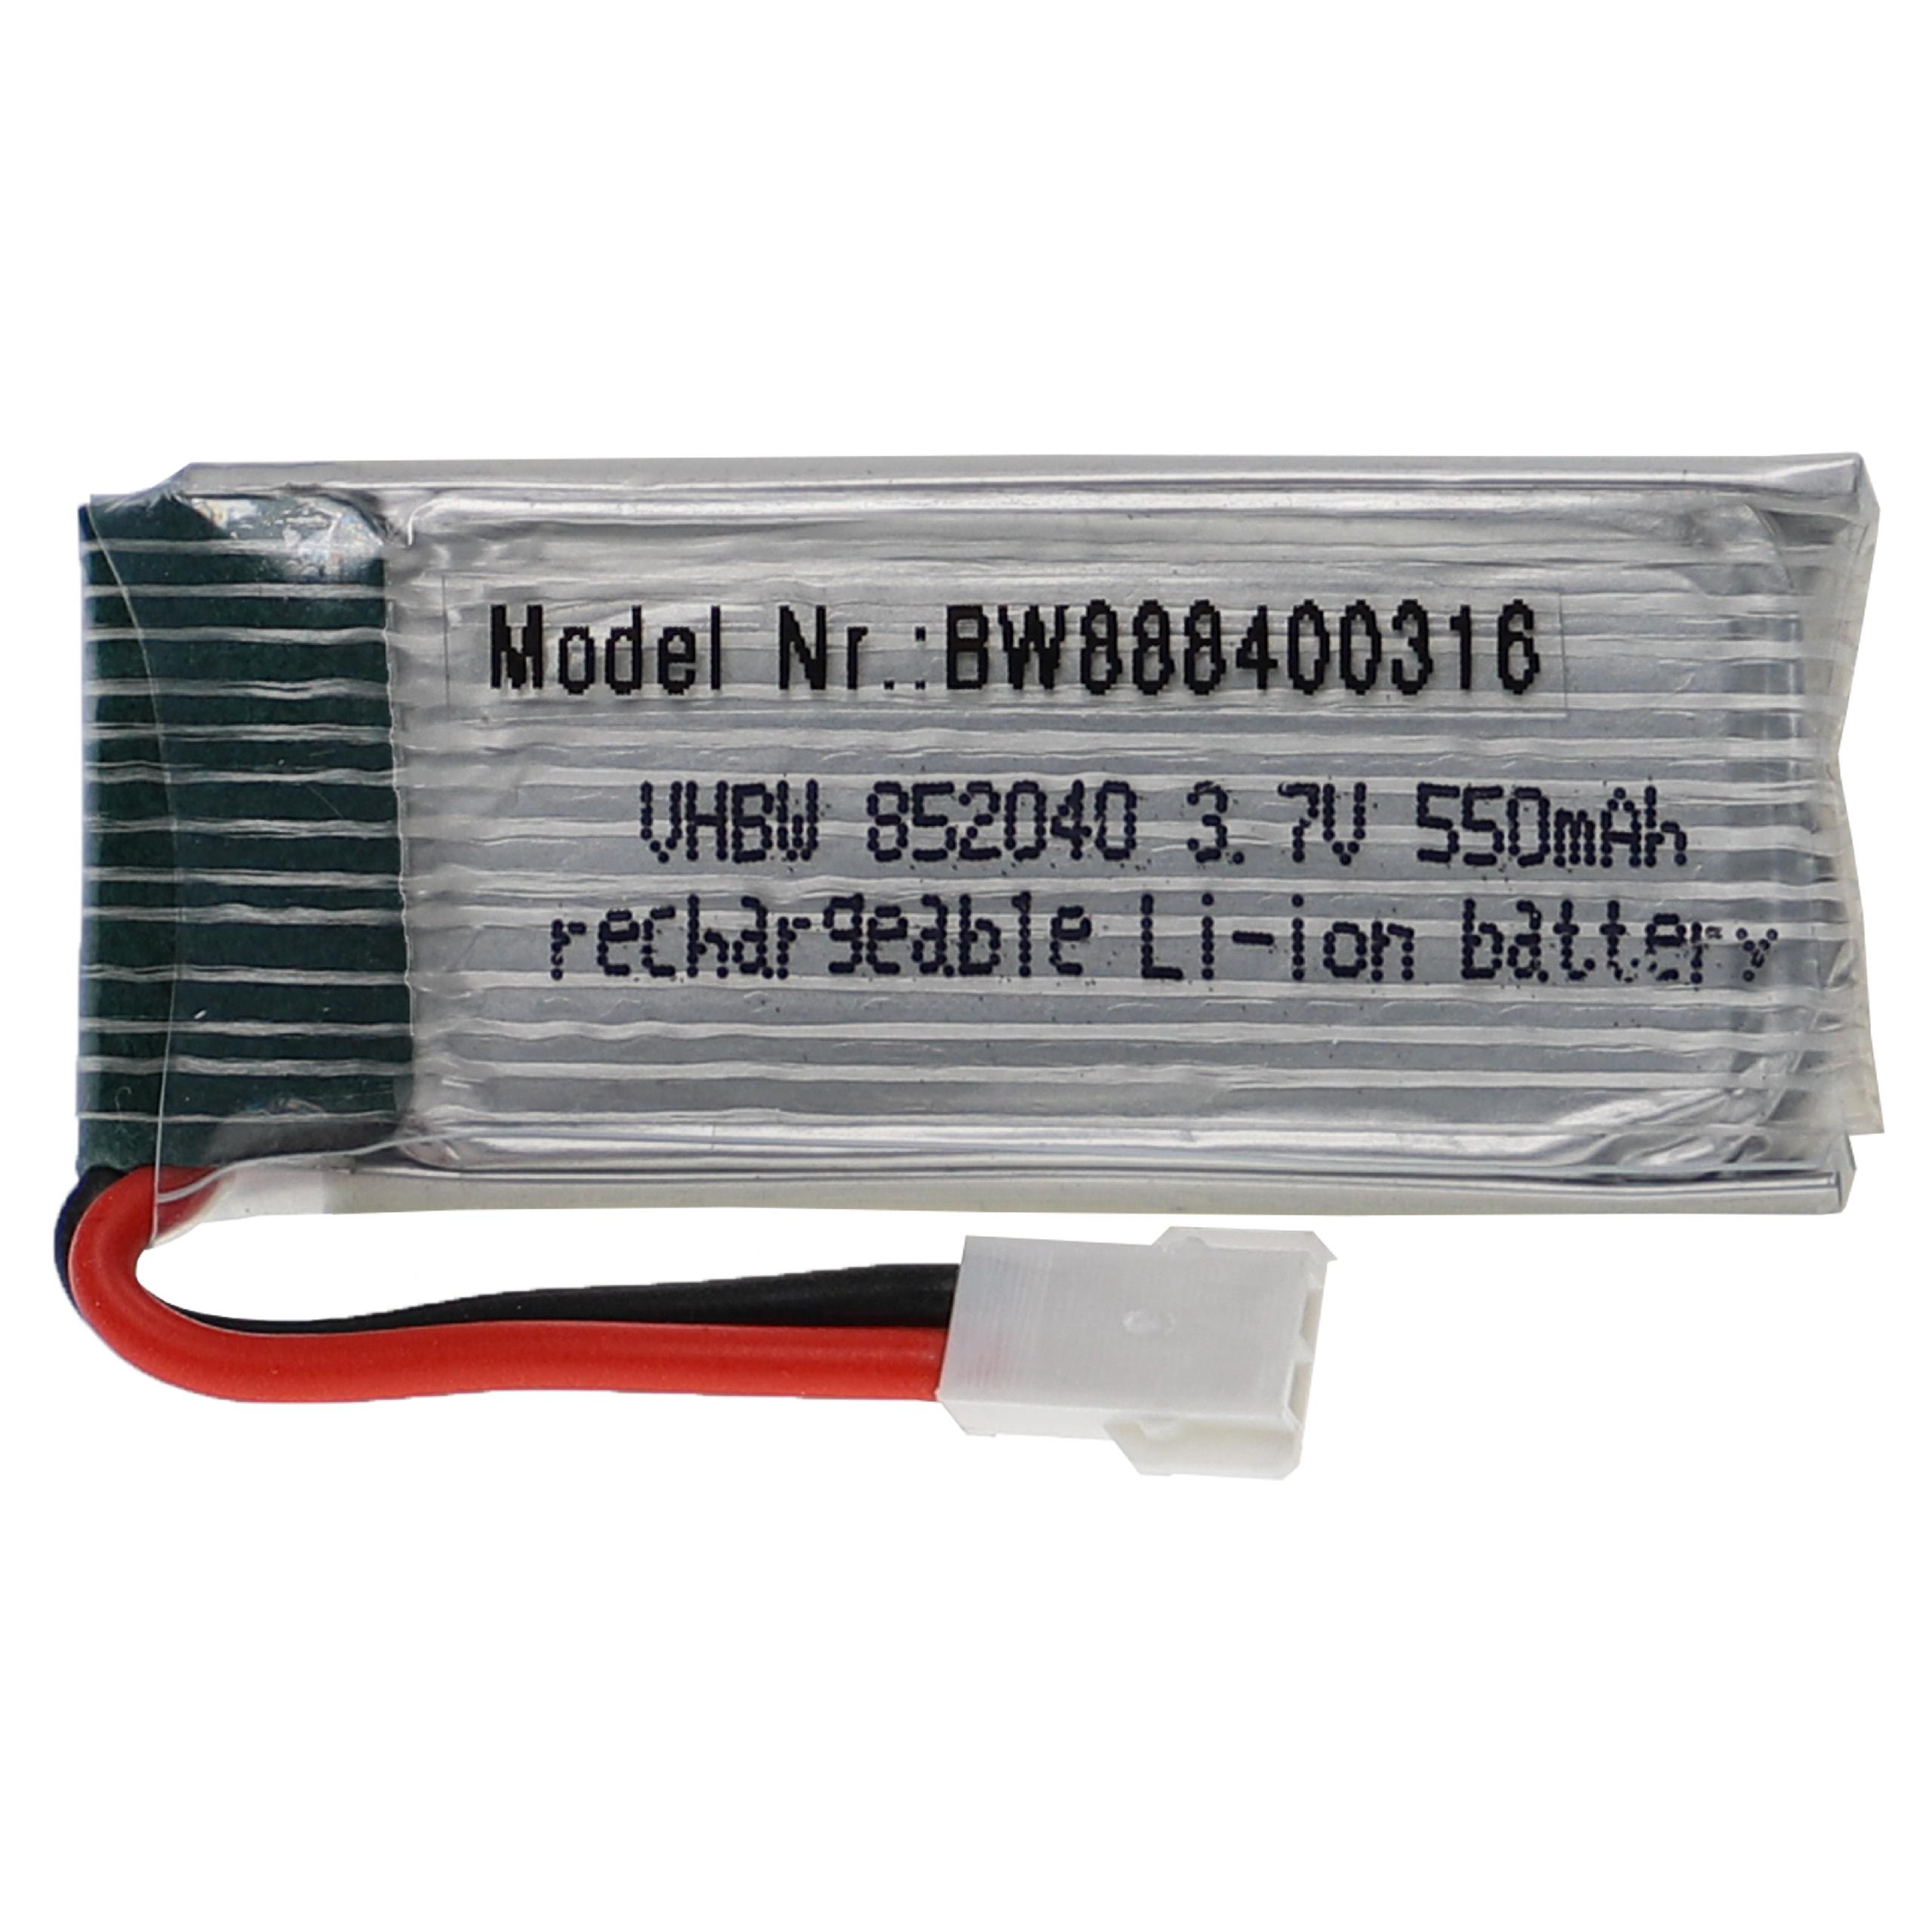 Batterie pour modèle radio-télécommandé - 550mAh 3,7V Li-polymère, XH 2.54 2P